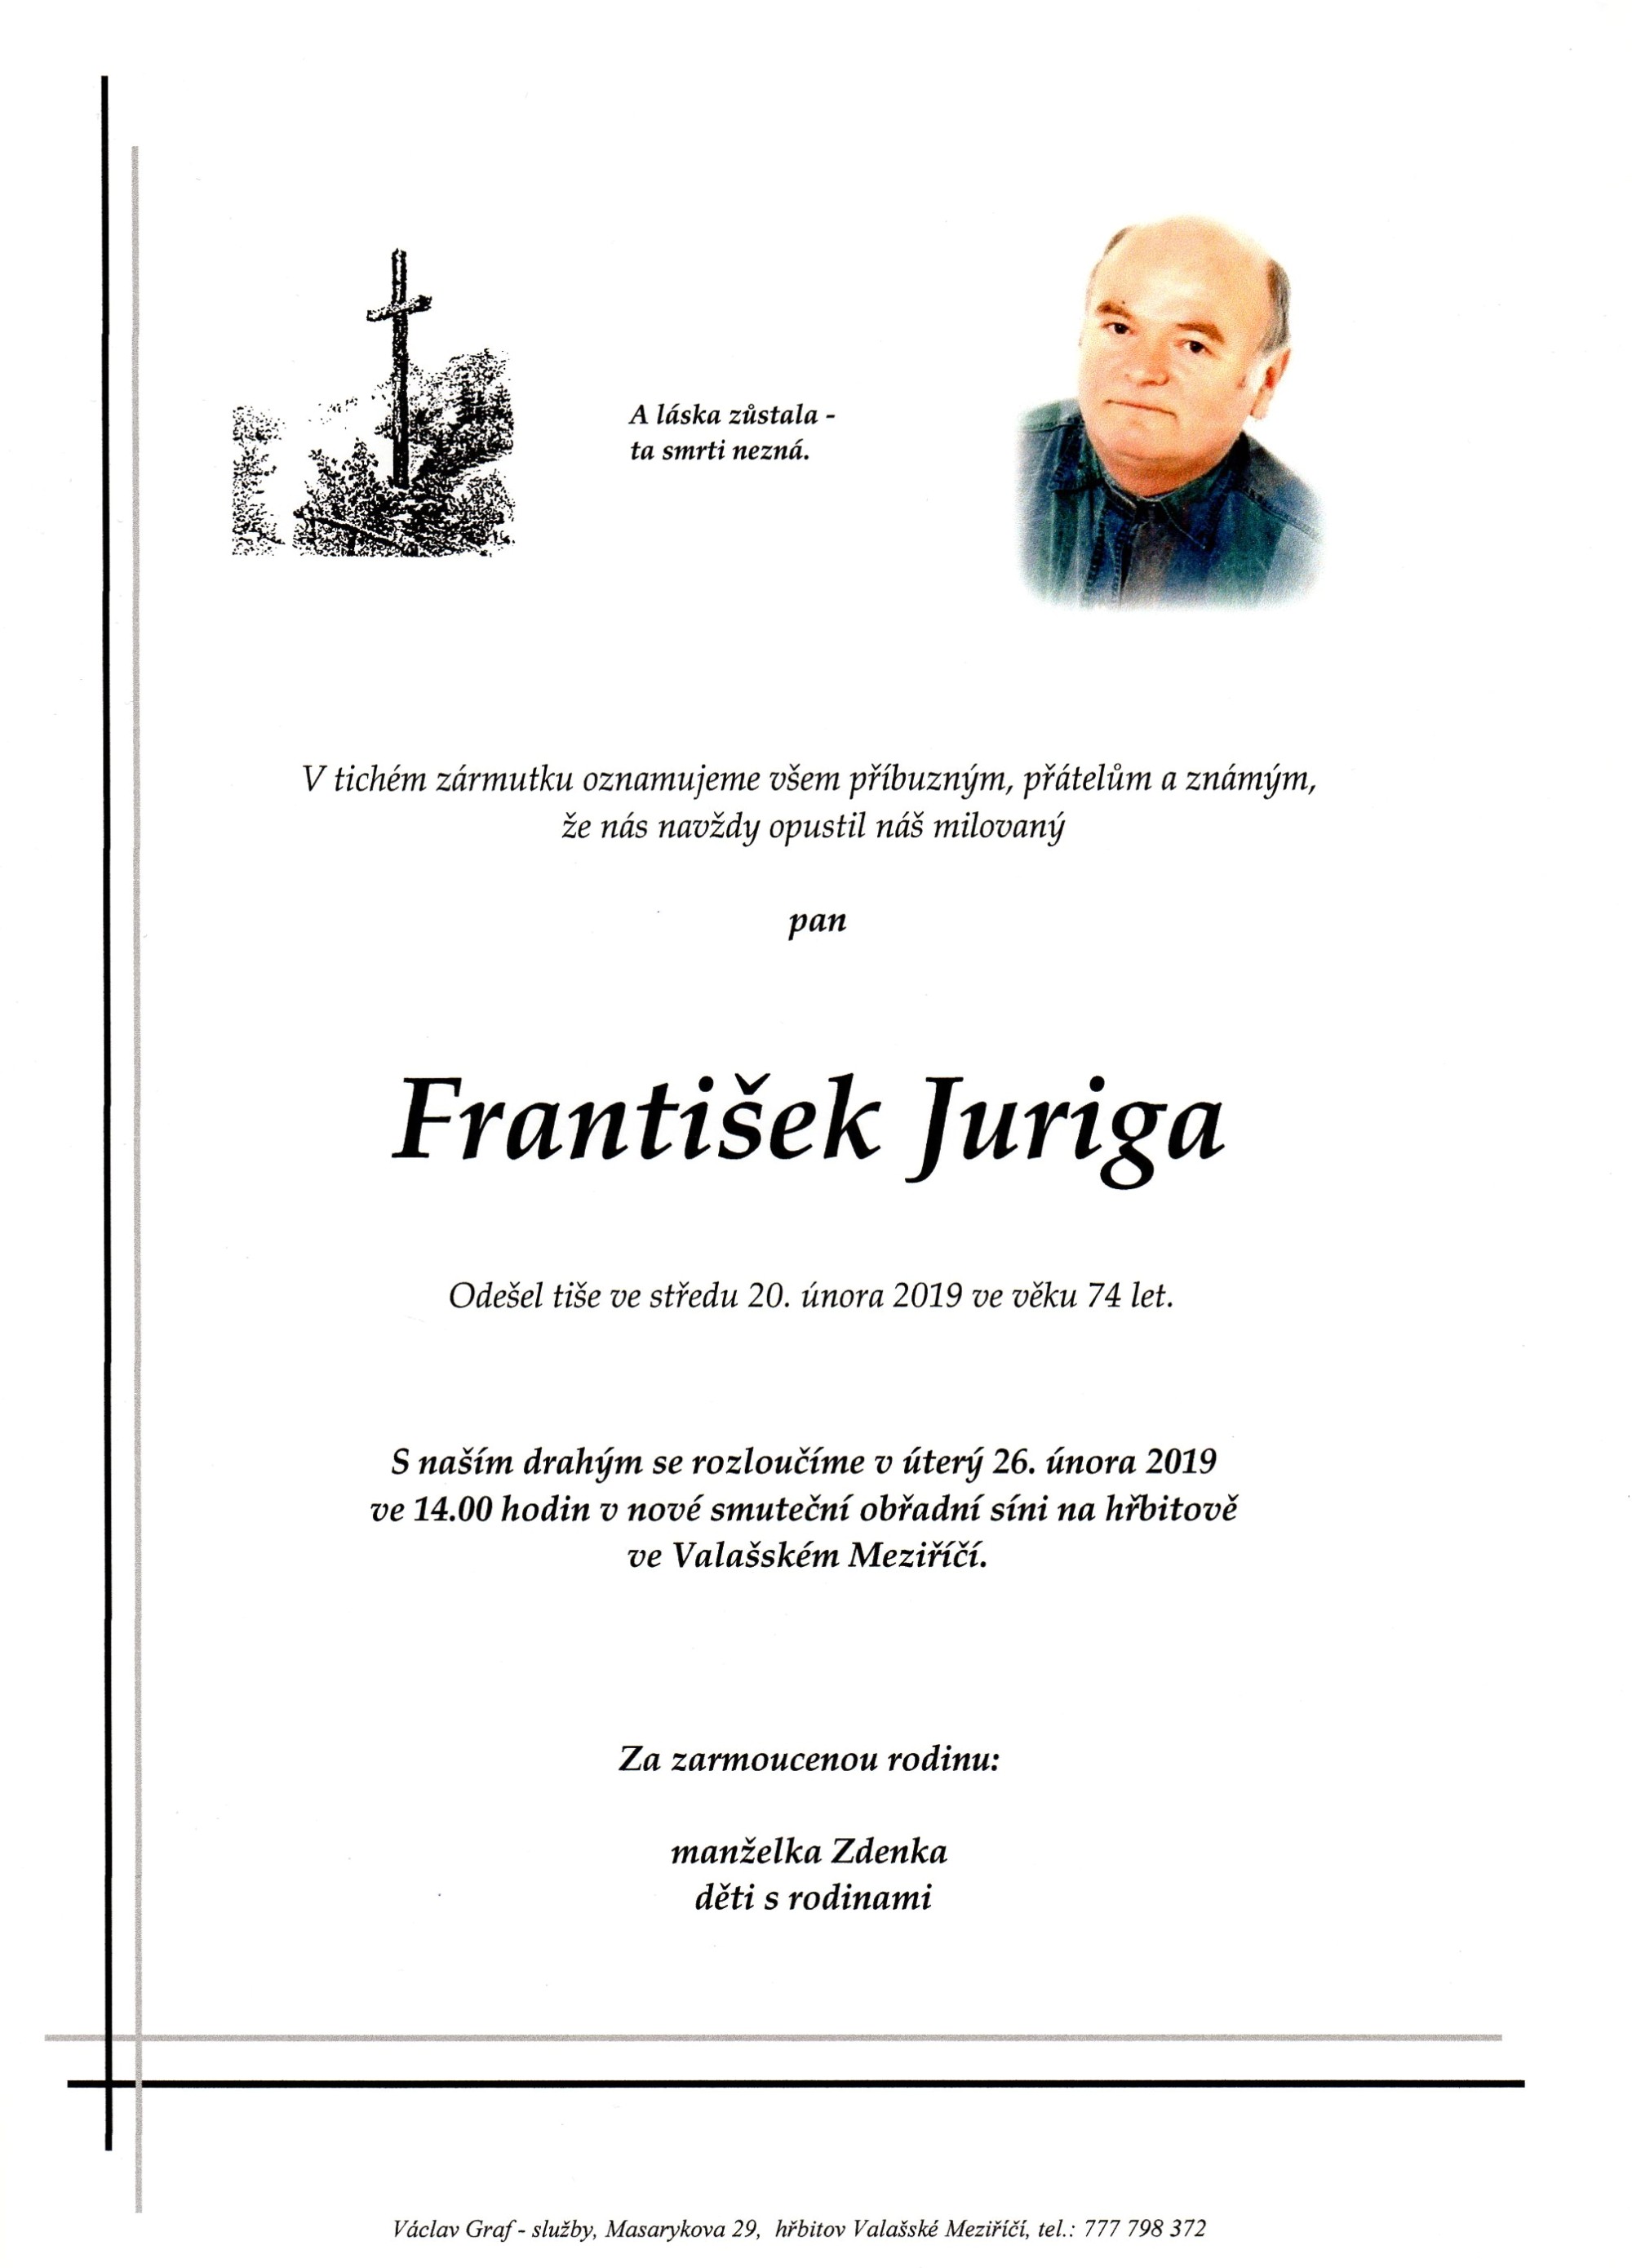 František Juriga